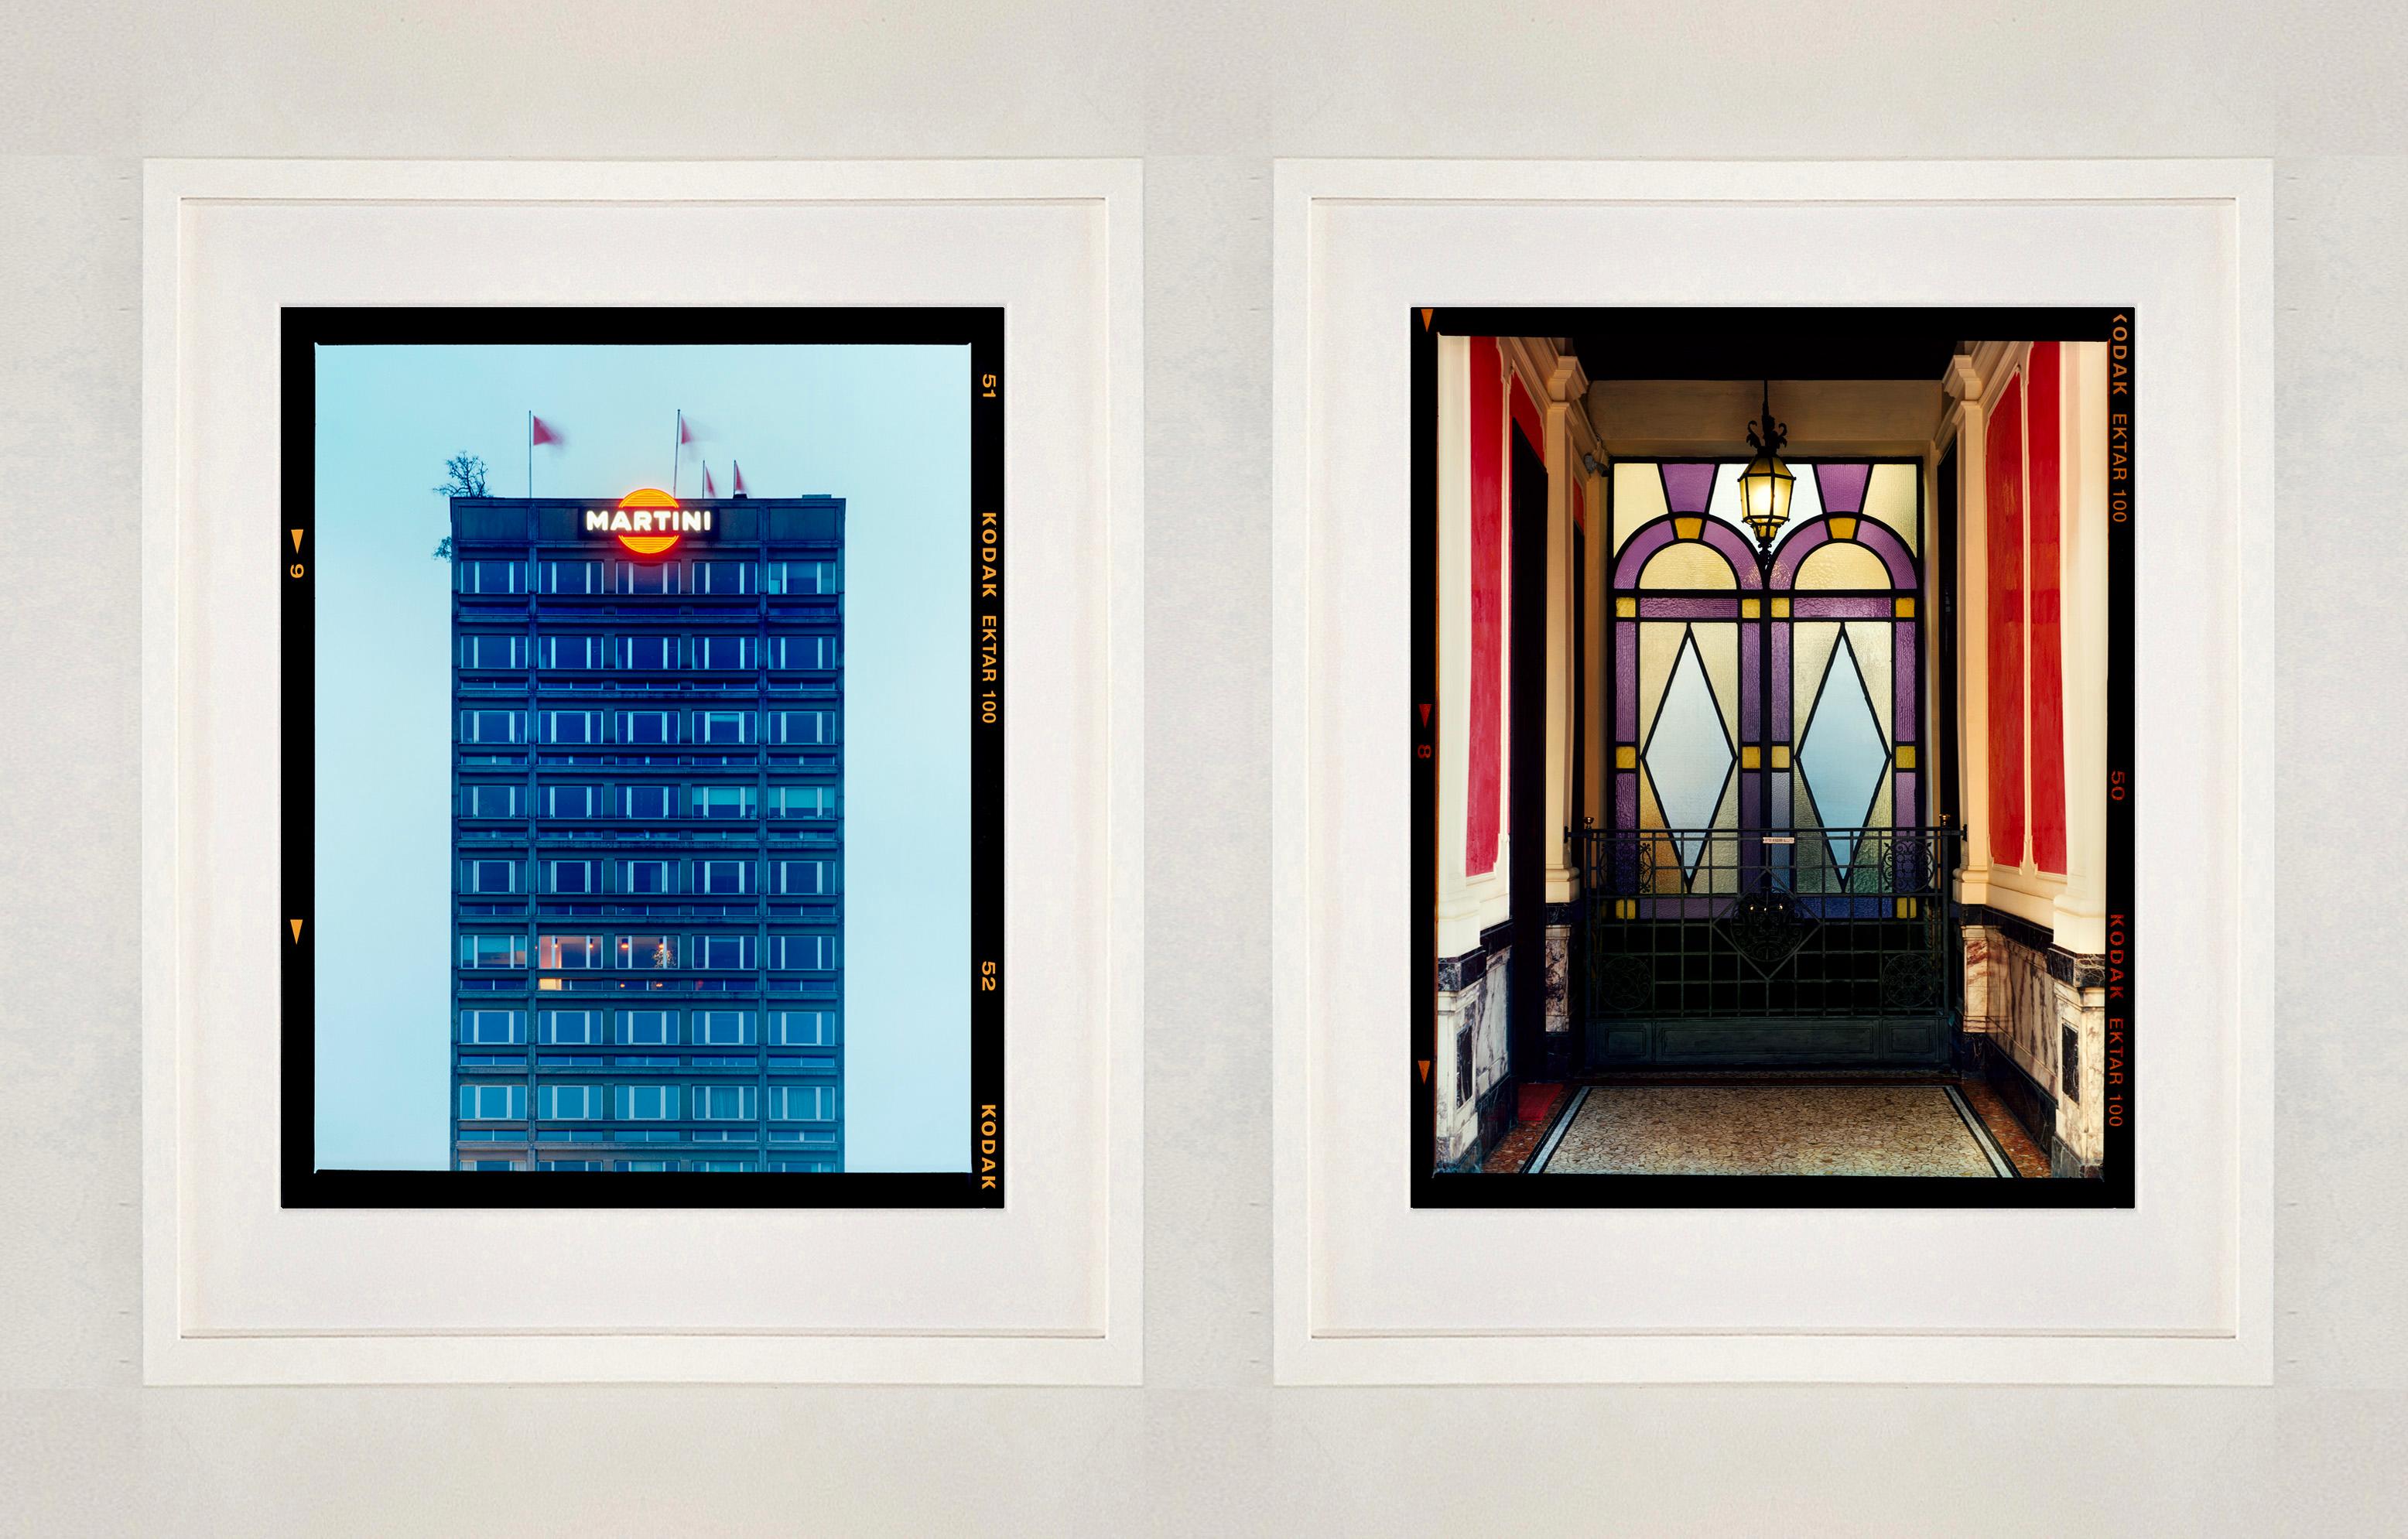 Foyer VII, Mailand - Italienische architektonische Farbfotografie (Schwarz), Color Photograph, von Richard Heeps